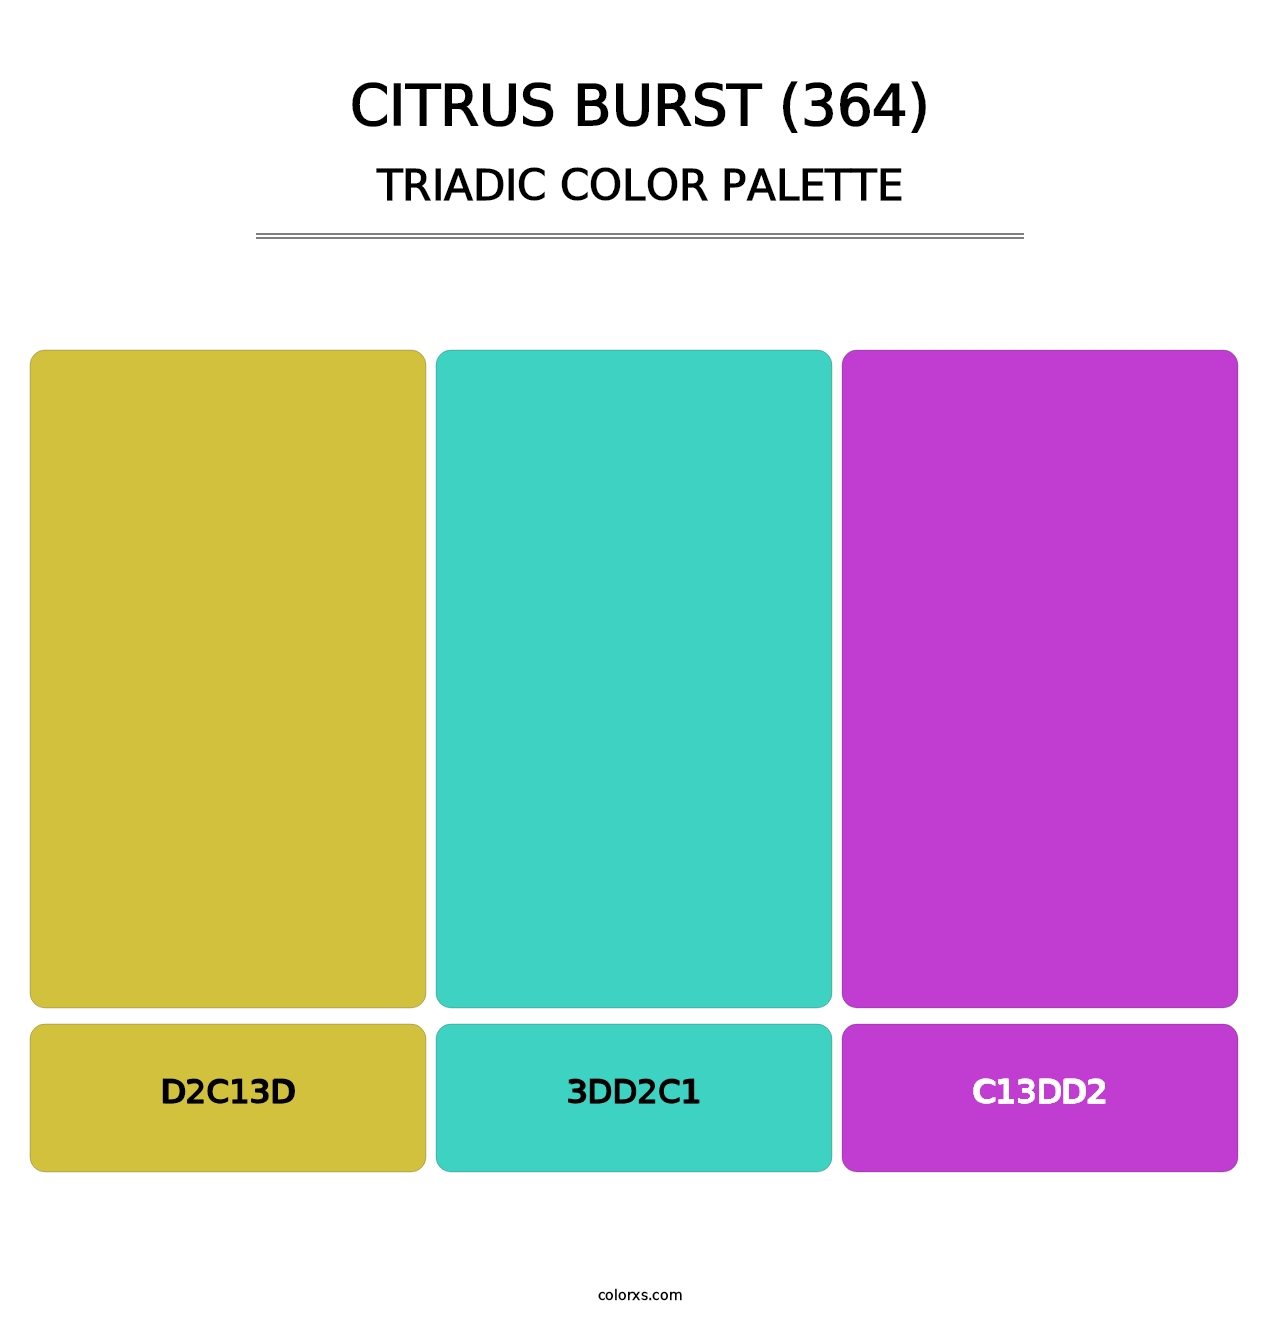 Citrus Burst (364) - Triadic Color Palette